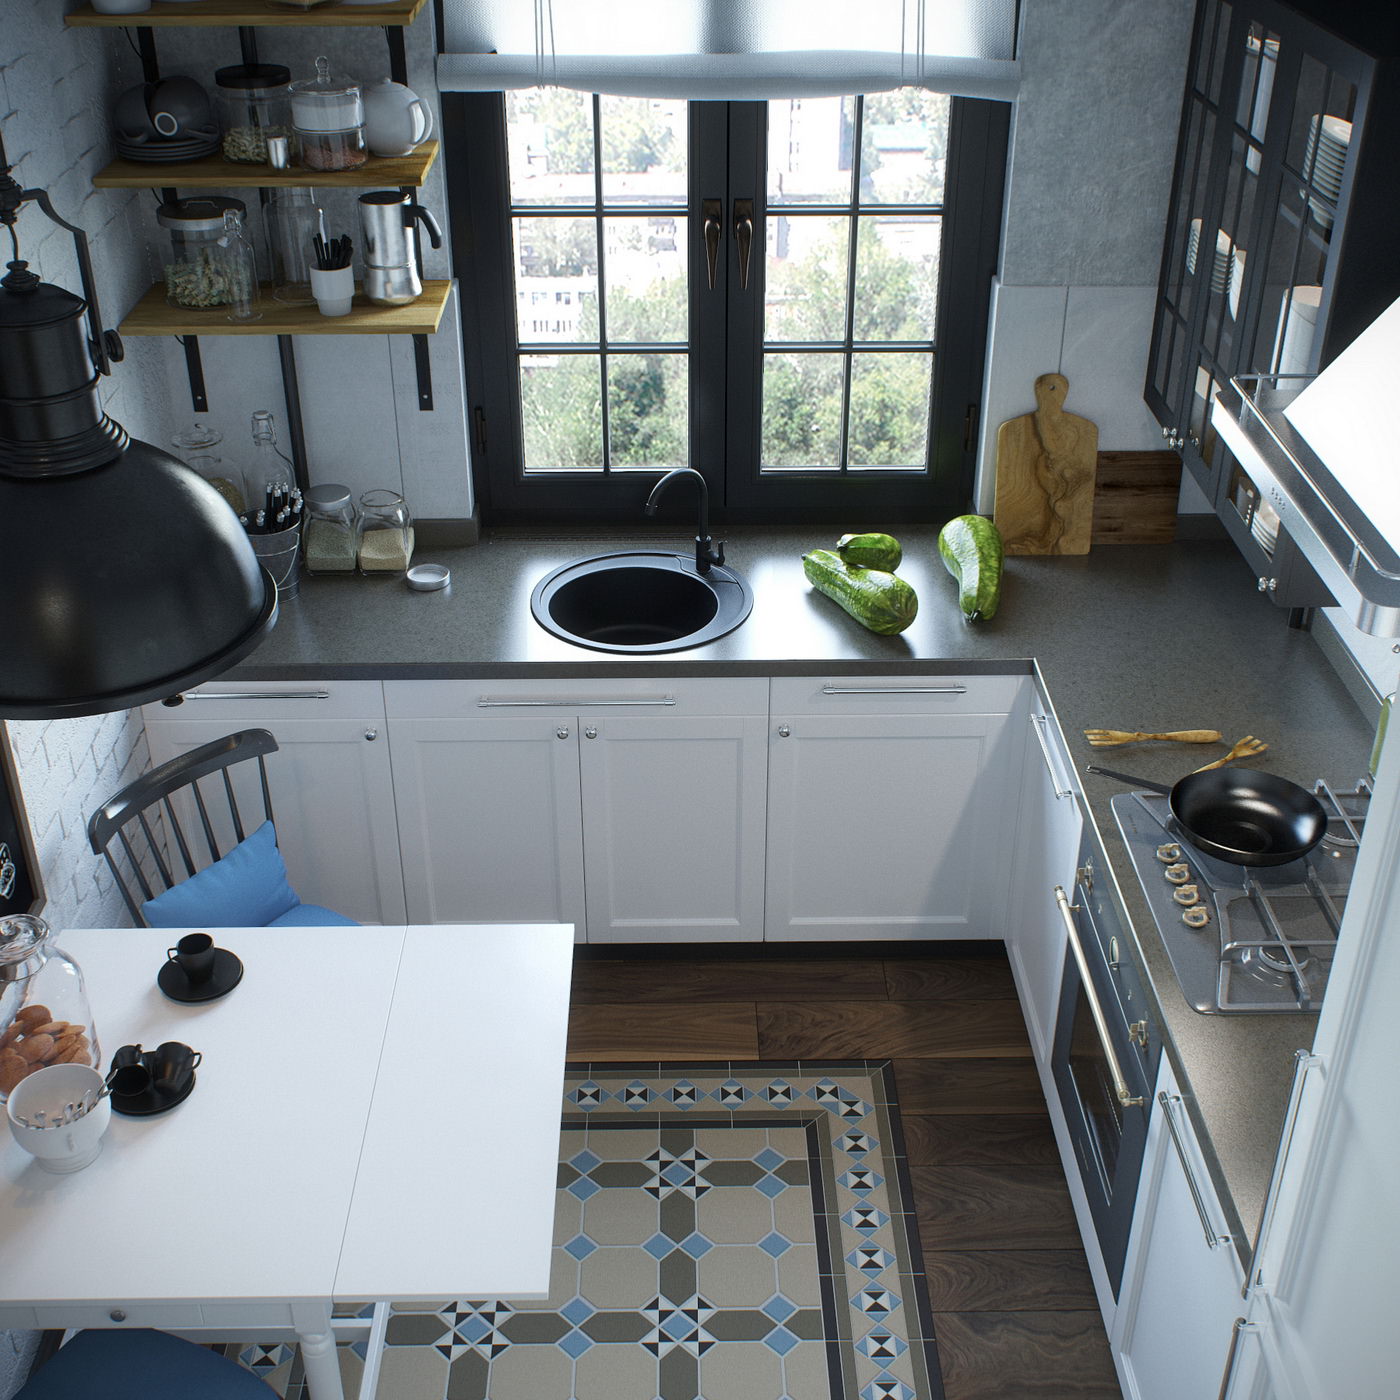 Visualisation en plongée photoréaliste du coin-repas, de la surface de cuisson et de l’espace de lavage de la cuisine